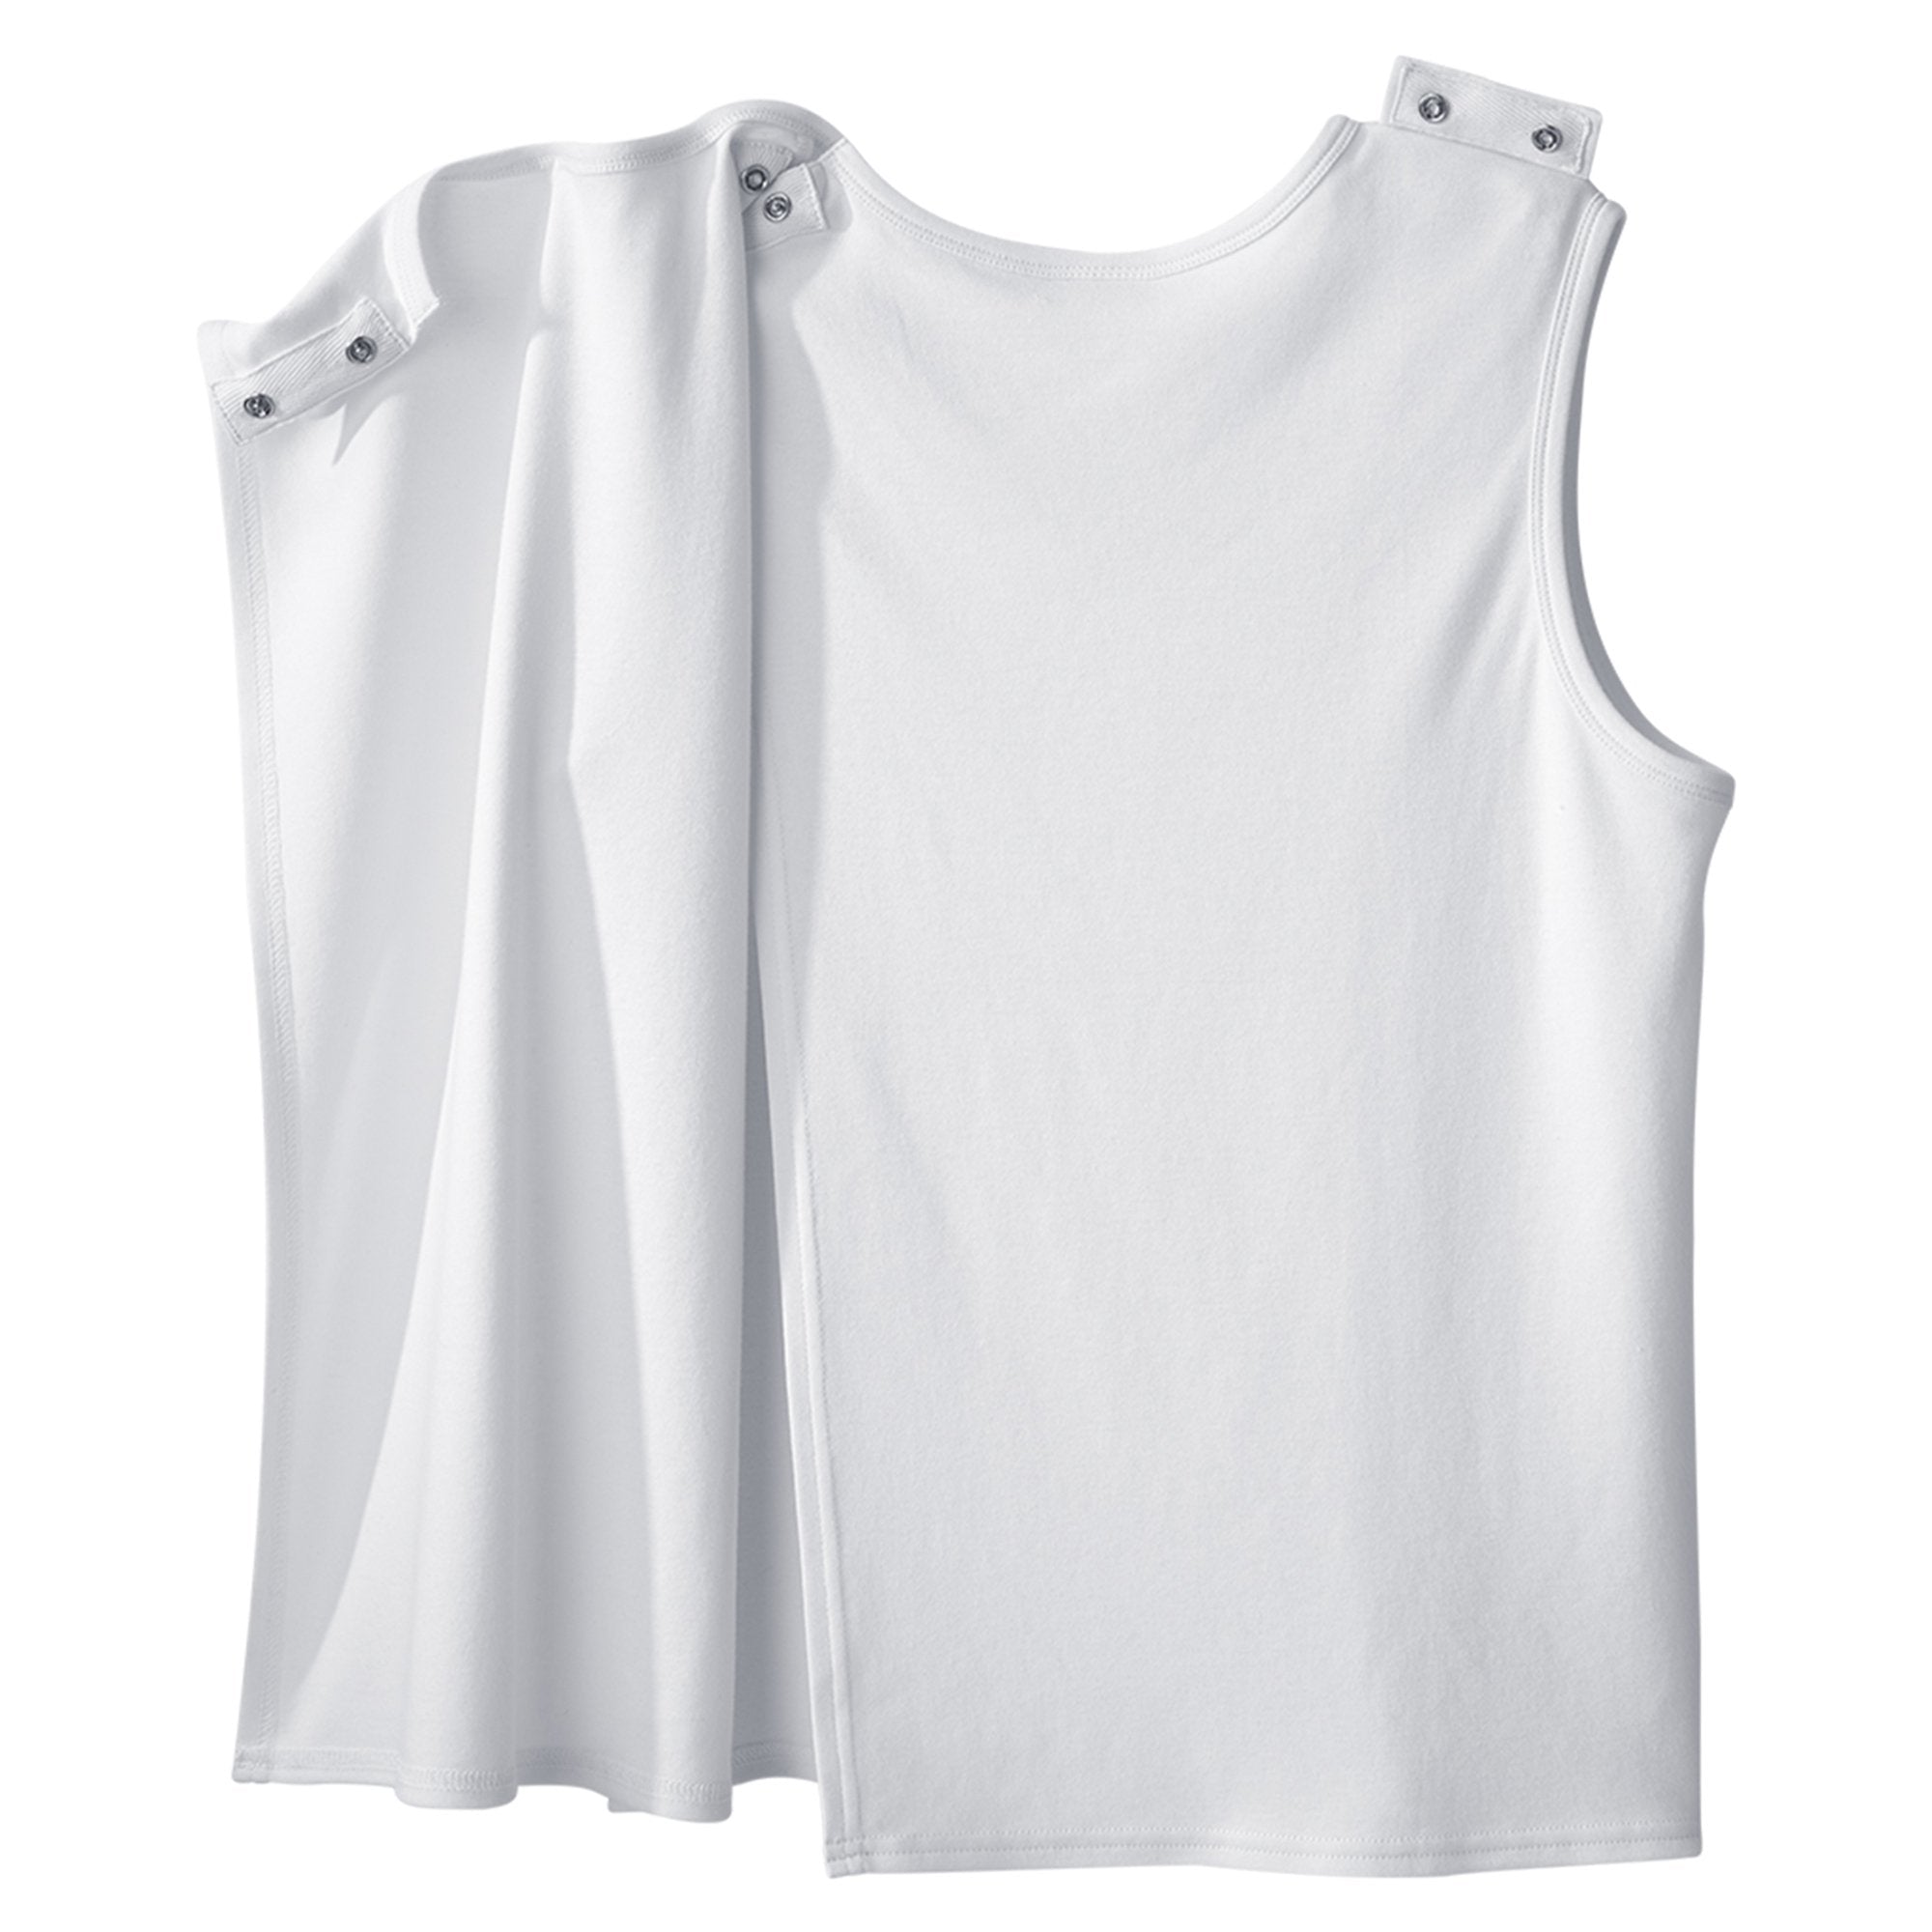 Adaptive Undershirt Silverts Medium White Without Pockets Sleeveless Female